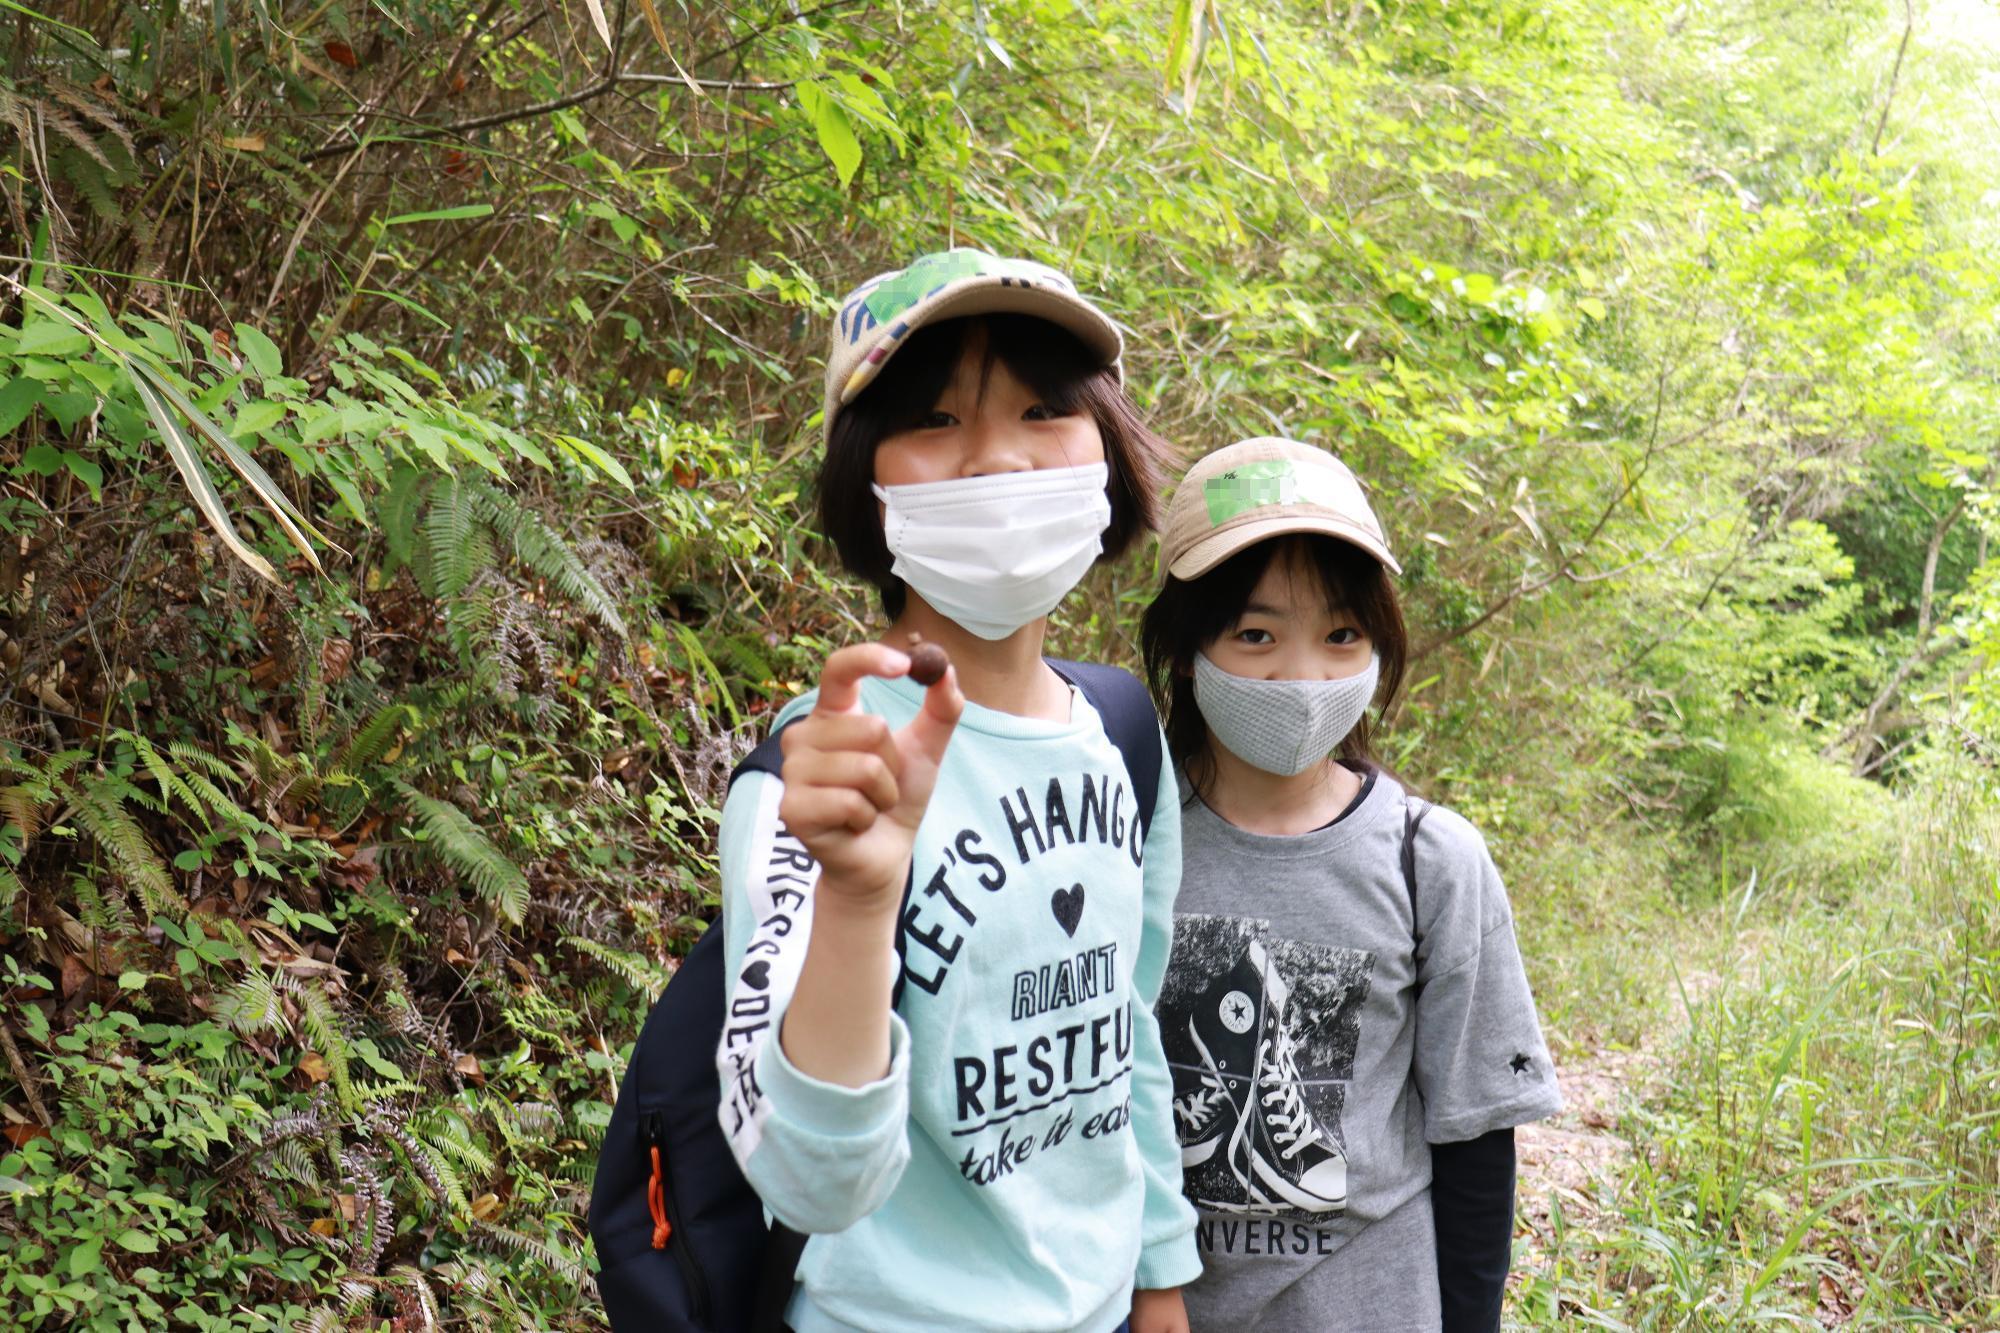 宍粟あるもの探しプログラムに参加した子どもが山の中で見つけた木の実を見せている写真